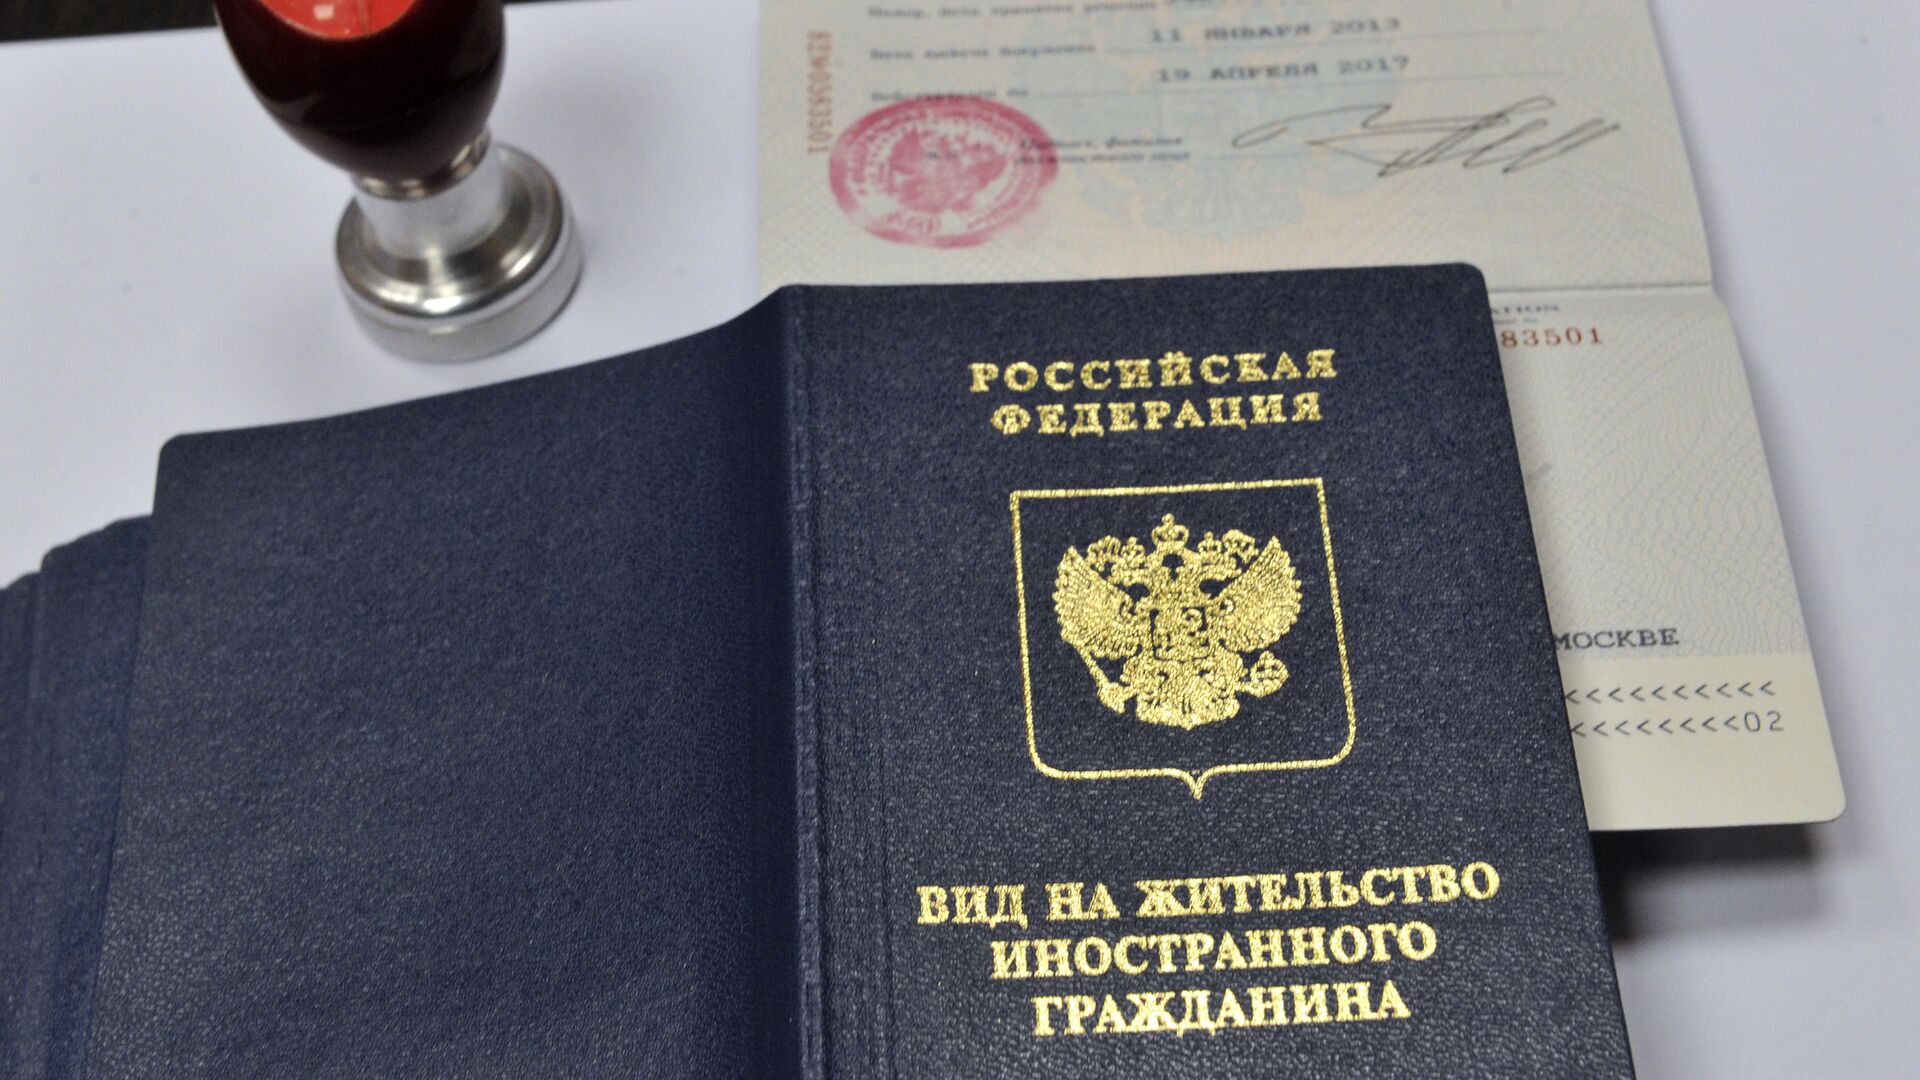 Вид на жительство иностранного гражданина в отделении по вопросам гражданства РФ - Sputnik Moldova, 1920, 09.07.2021